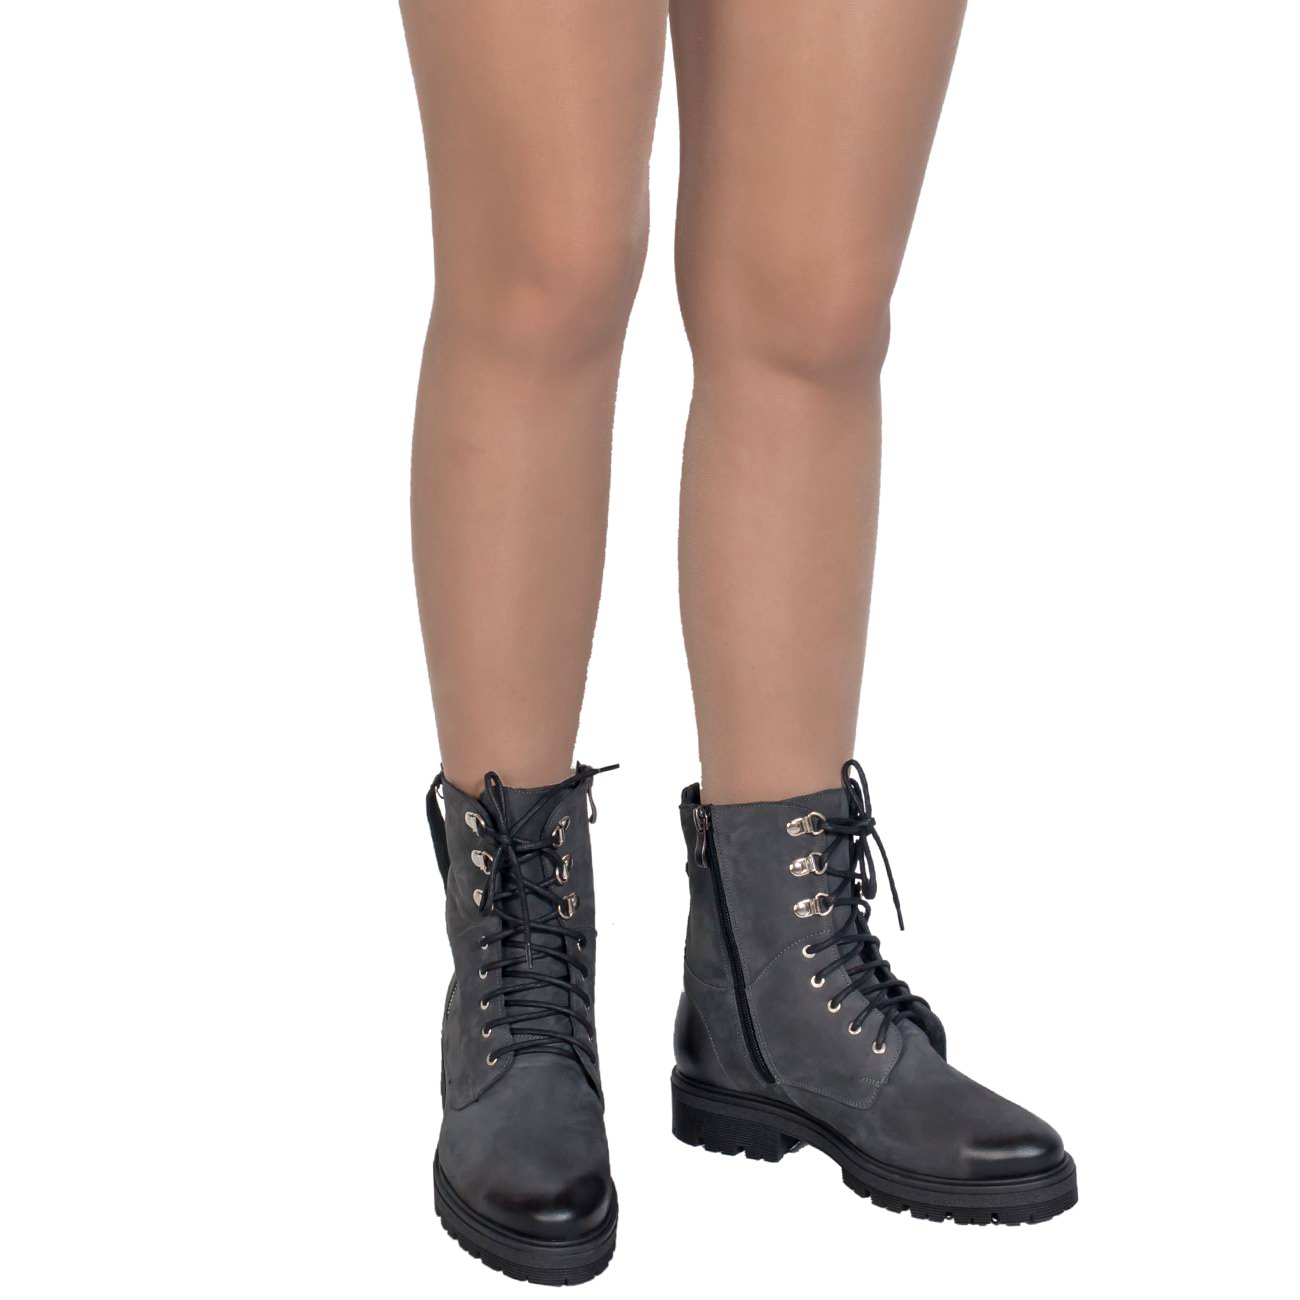 Осенние женские ботинки из нубука на байке в стиле милитари в интернетмагазине Kwinto